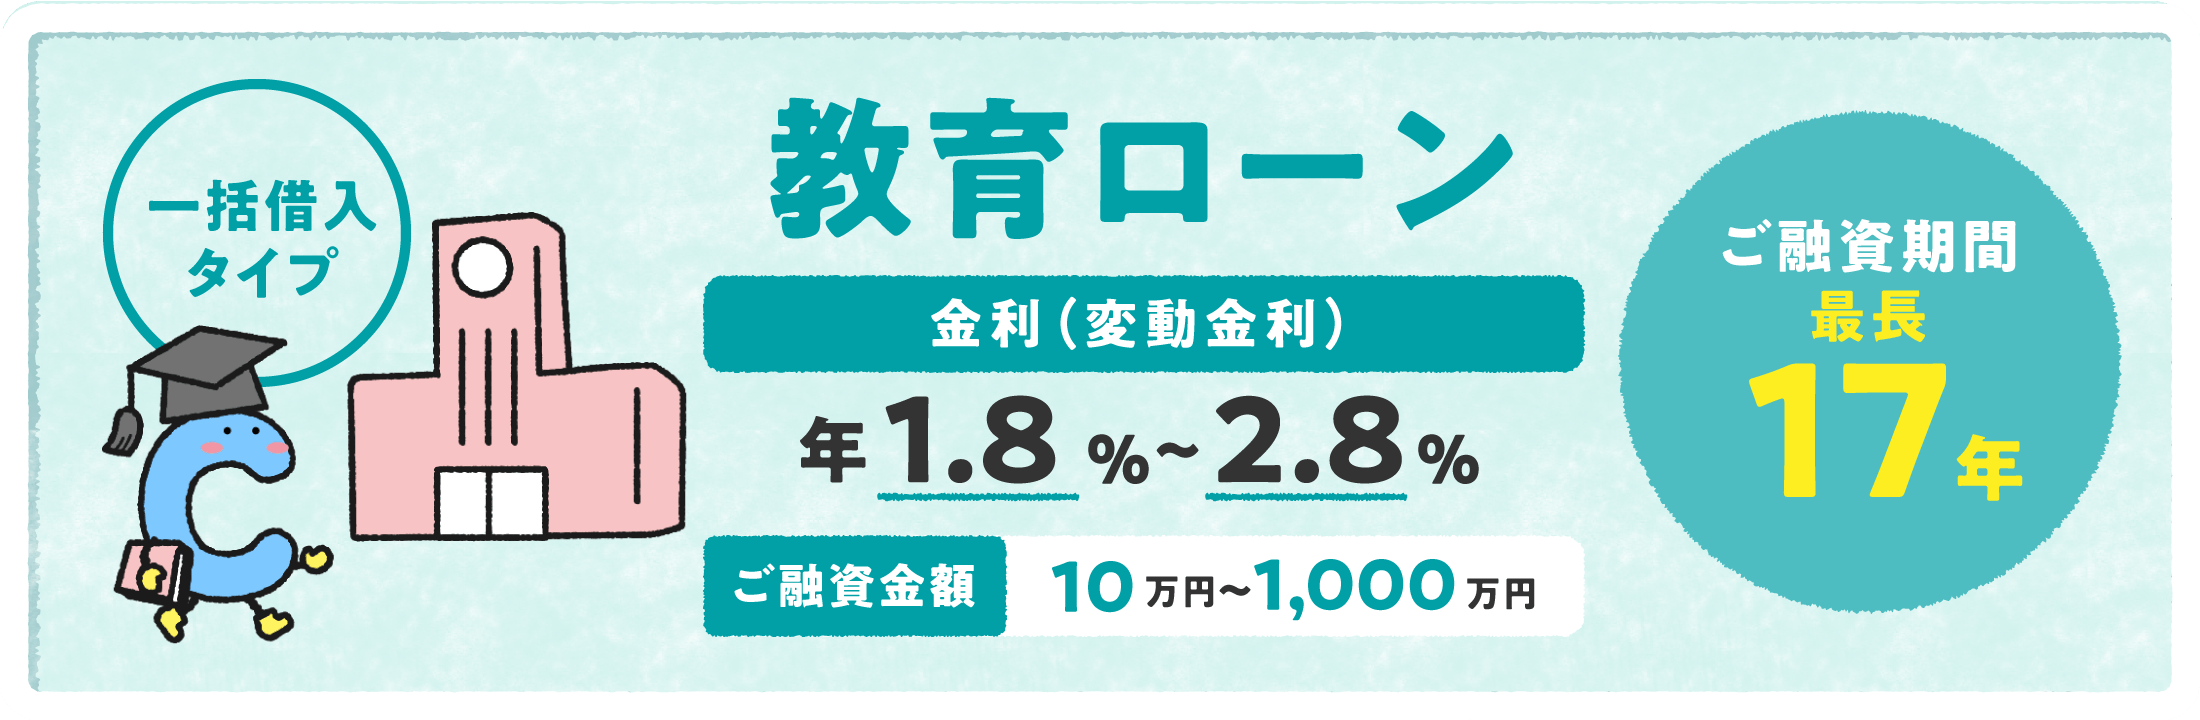 教育ローン 一括借入タイプ 金利（変動金利）年1.8%〜2.8% ご融資金額10万円〜1,000万円 ご融資期間最長17年